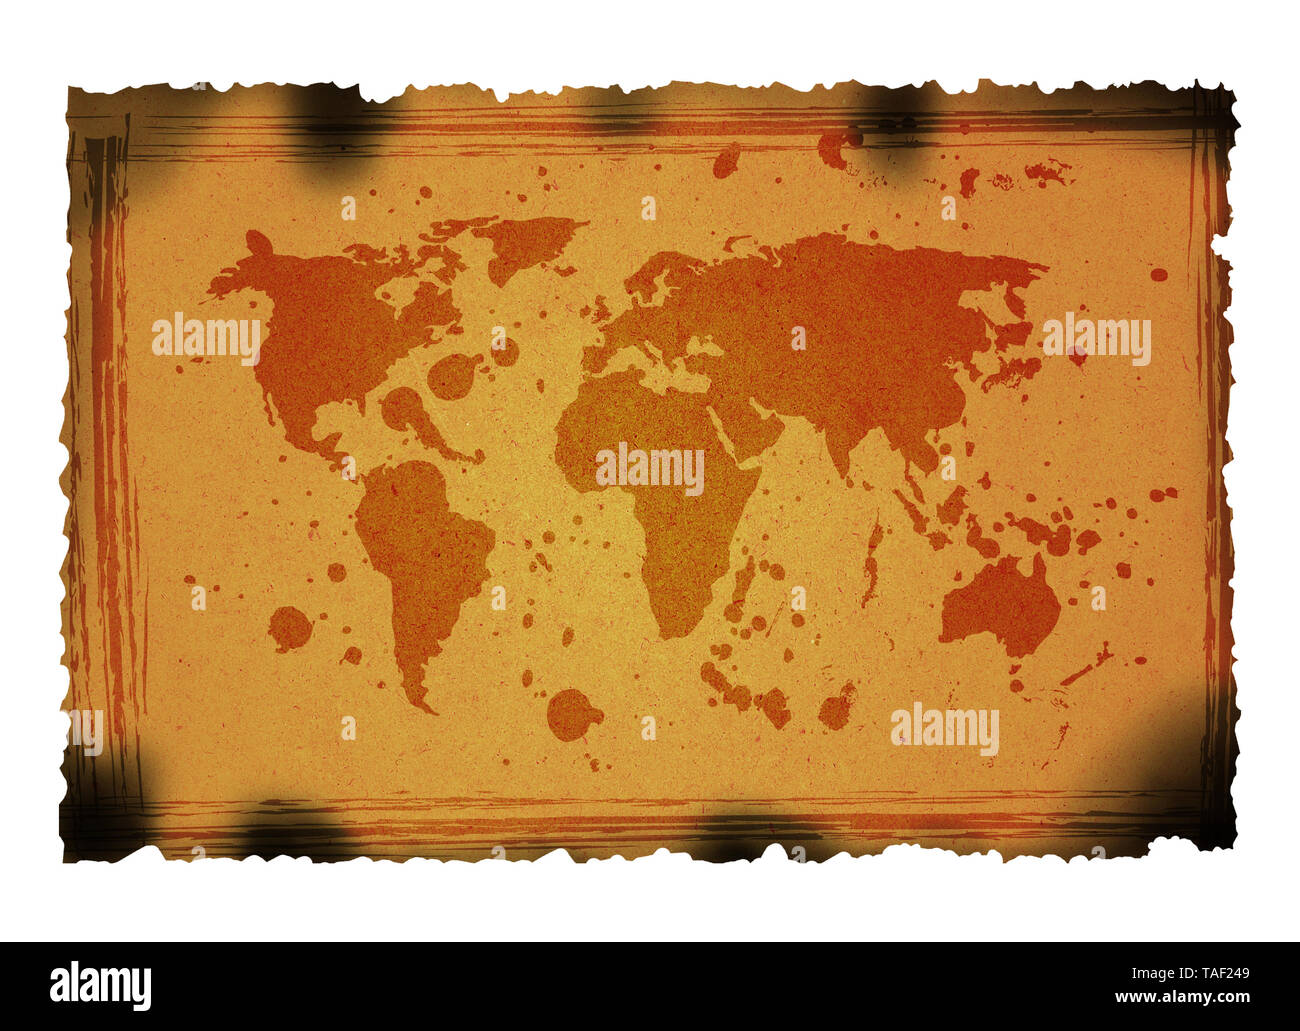 Carte du monde sur rusty grunge background. Carte utilisée http://www.lib.utexas.edu/maps/world maps/world pol02.jpg http://www.lib.utexas. leur copyright : Banque D'Images